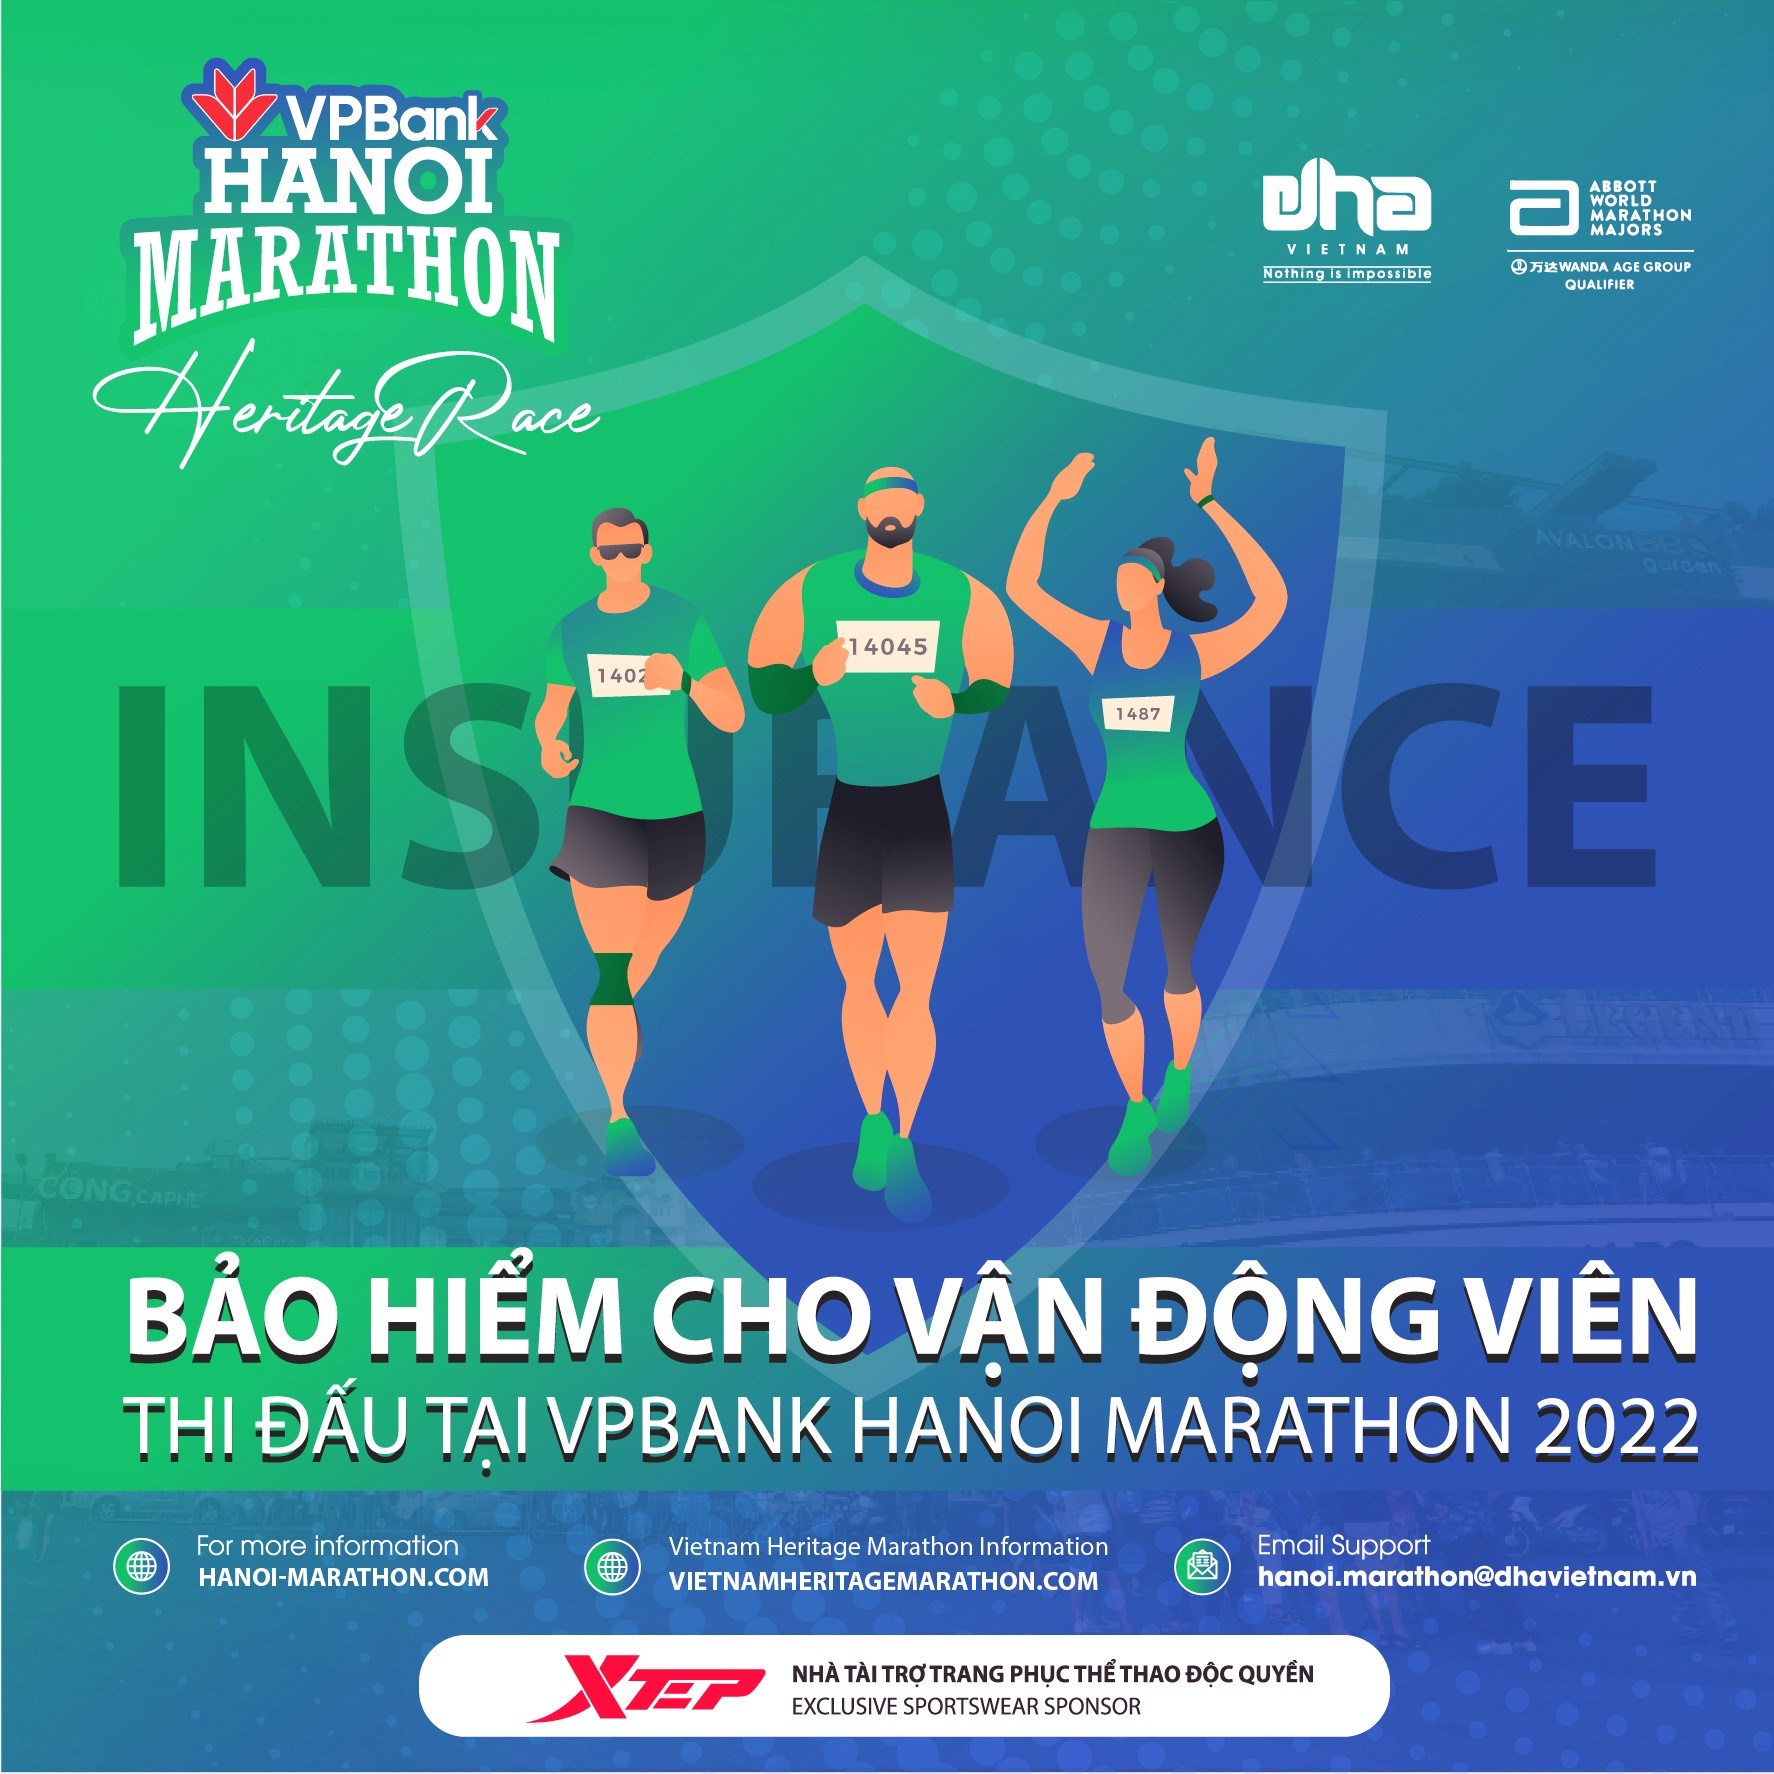 Insurance For VPBank Hanoi Marathon 2022 Runners